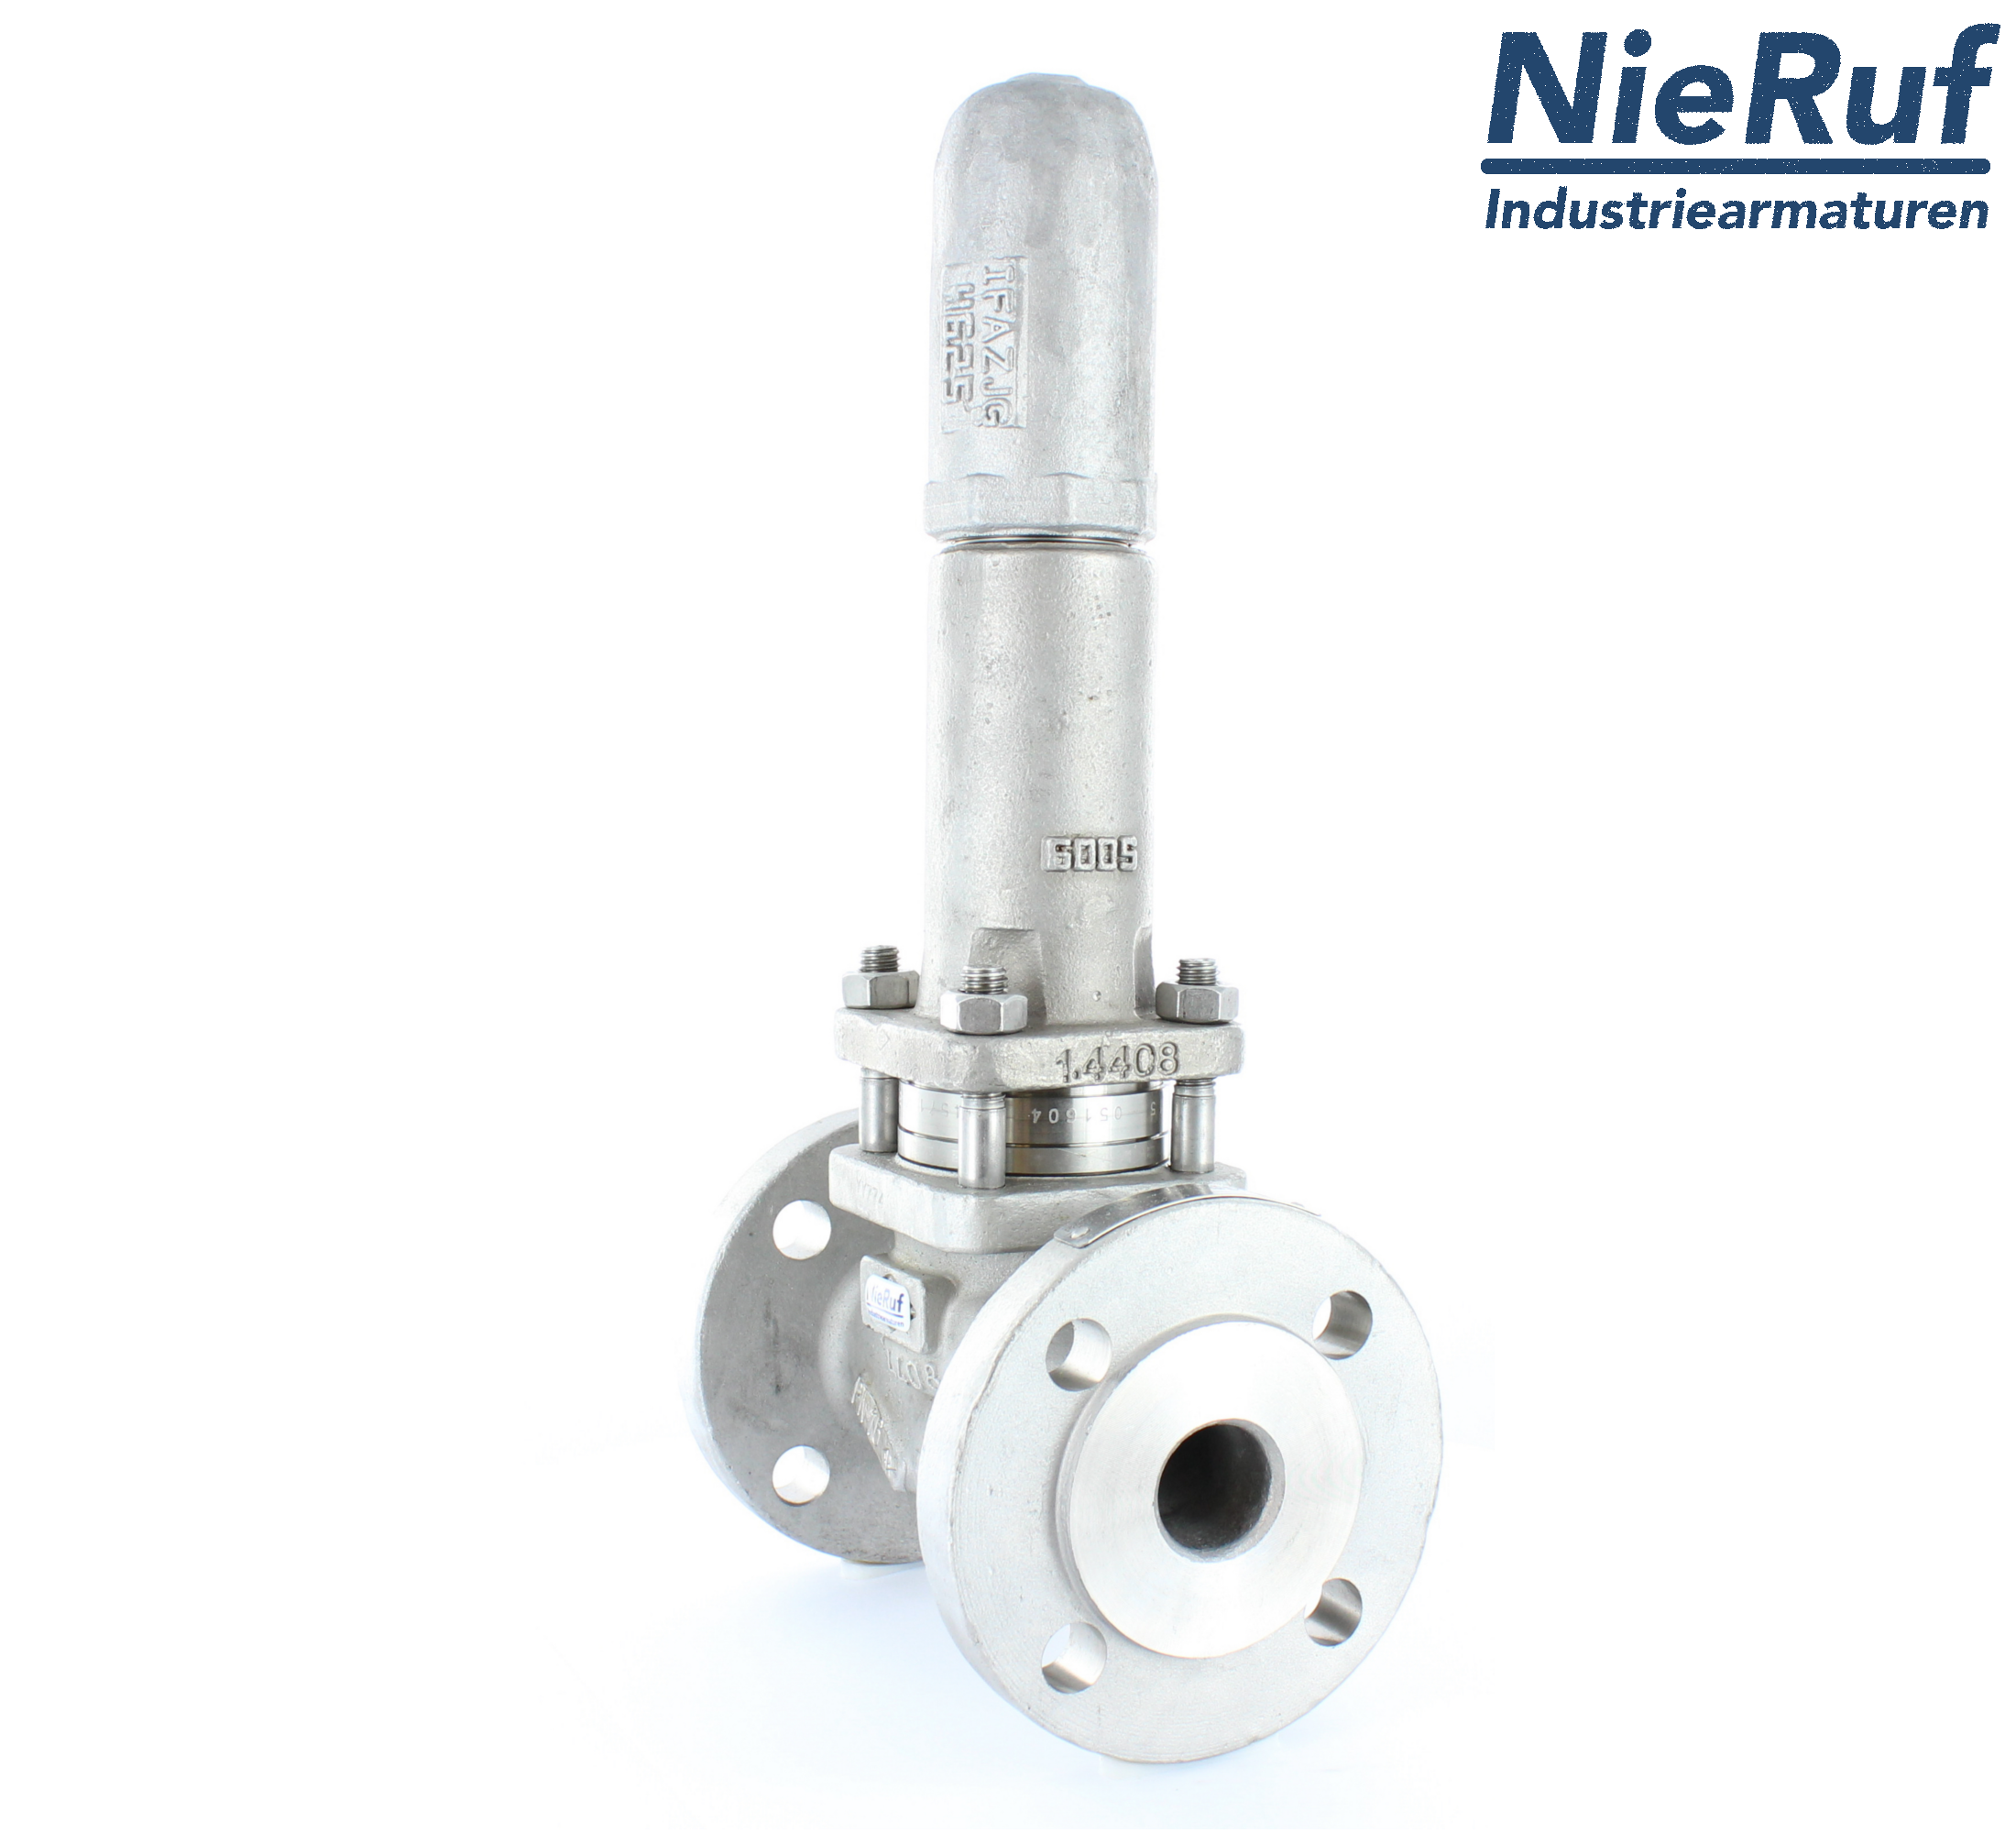 piston overflow valve DN 15 UV13 cast iron 1.0619+N 4,0 - 10,0 bar